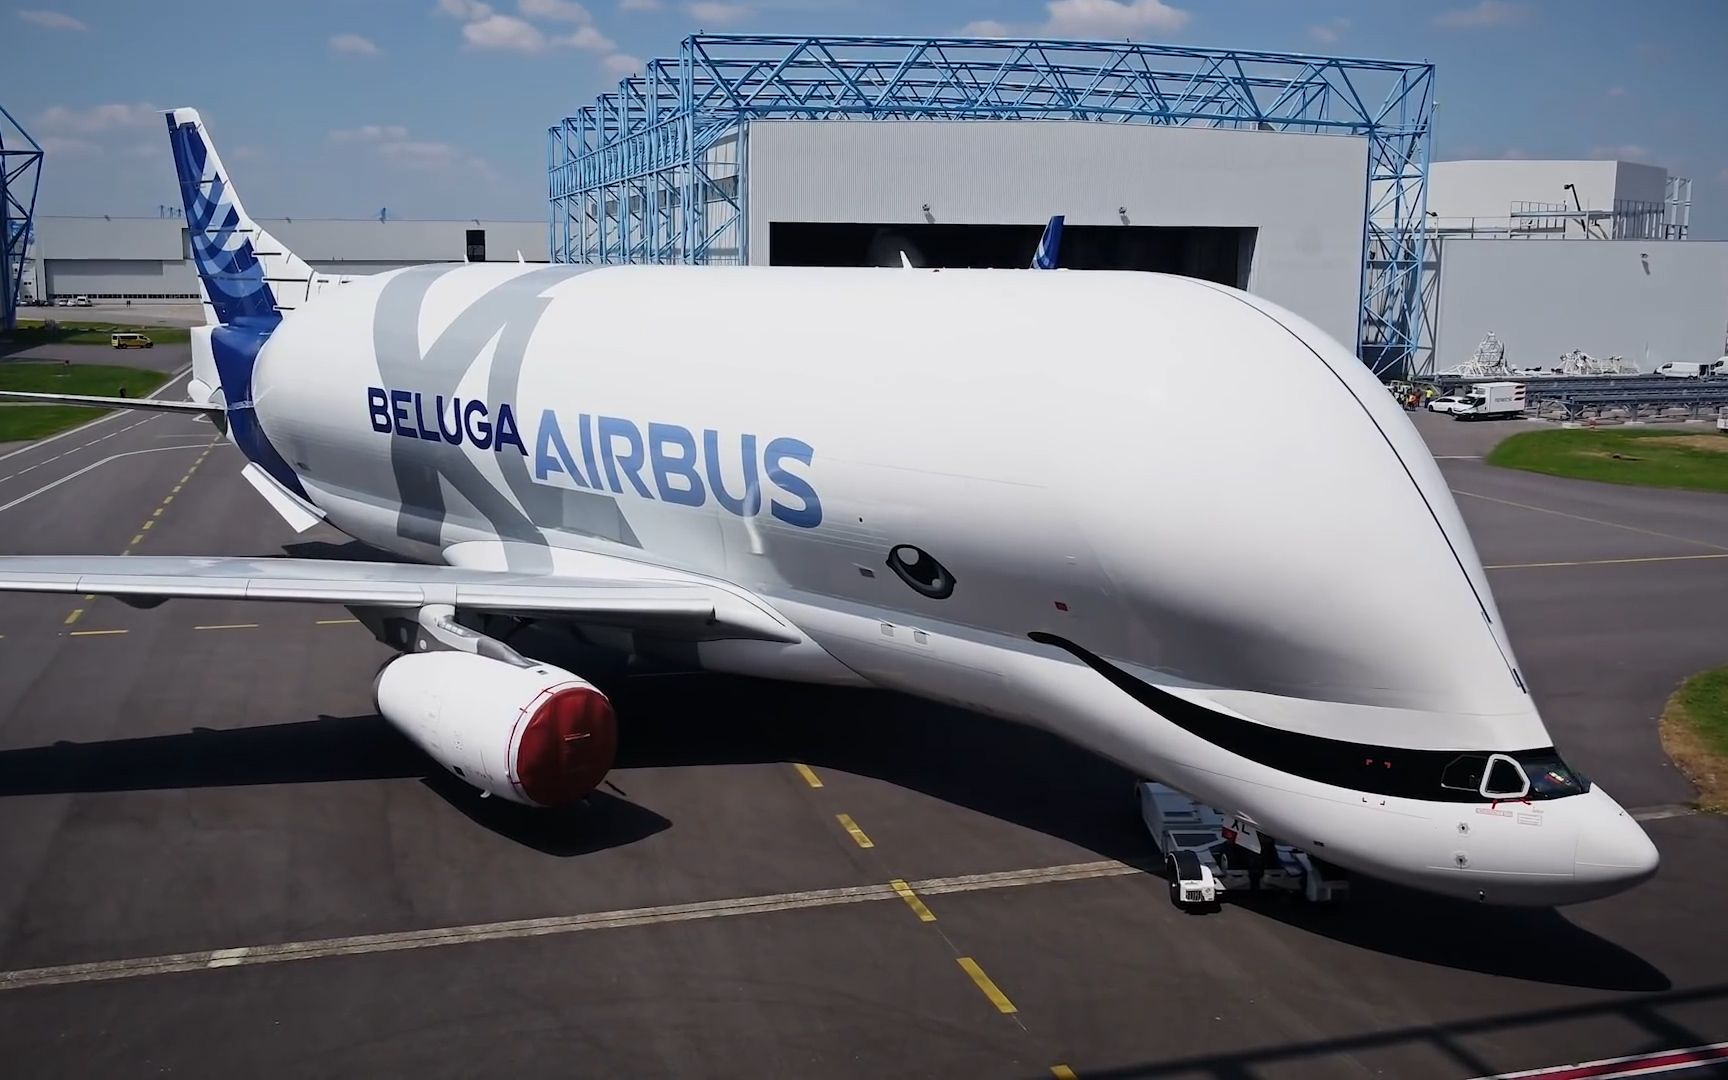 外形最独特的民用飞机——空客大白鲸运输机